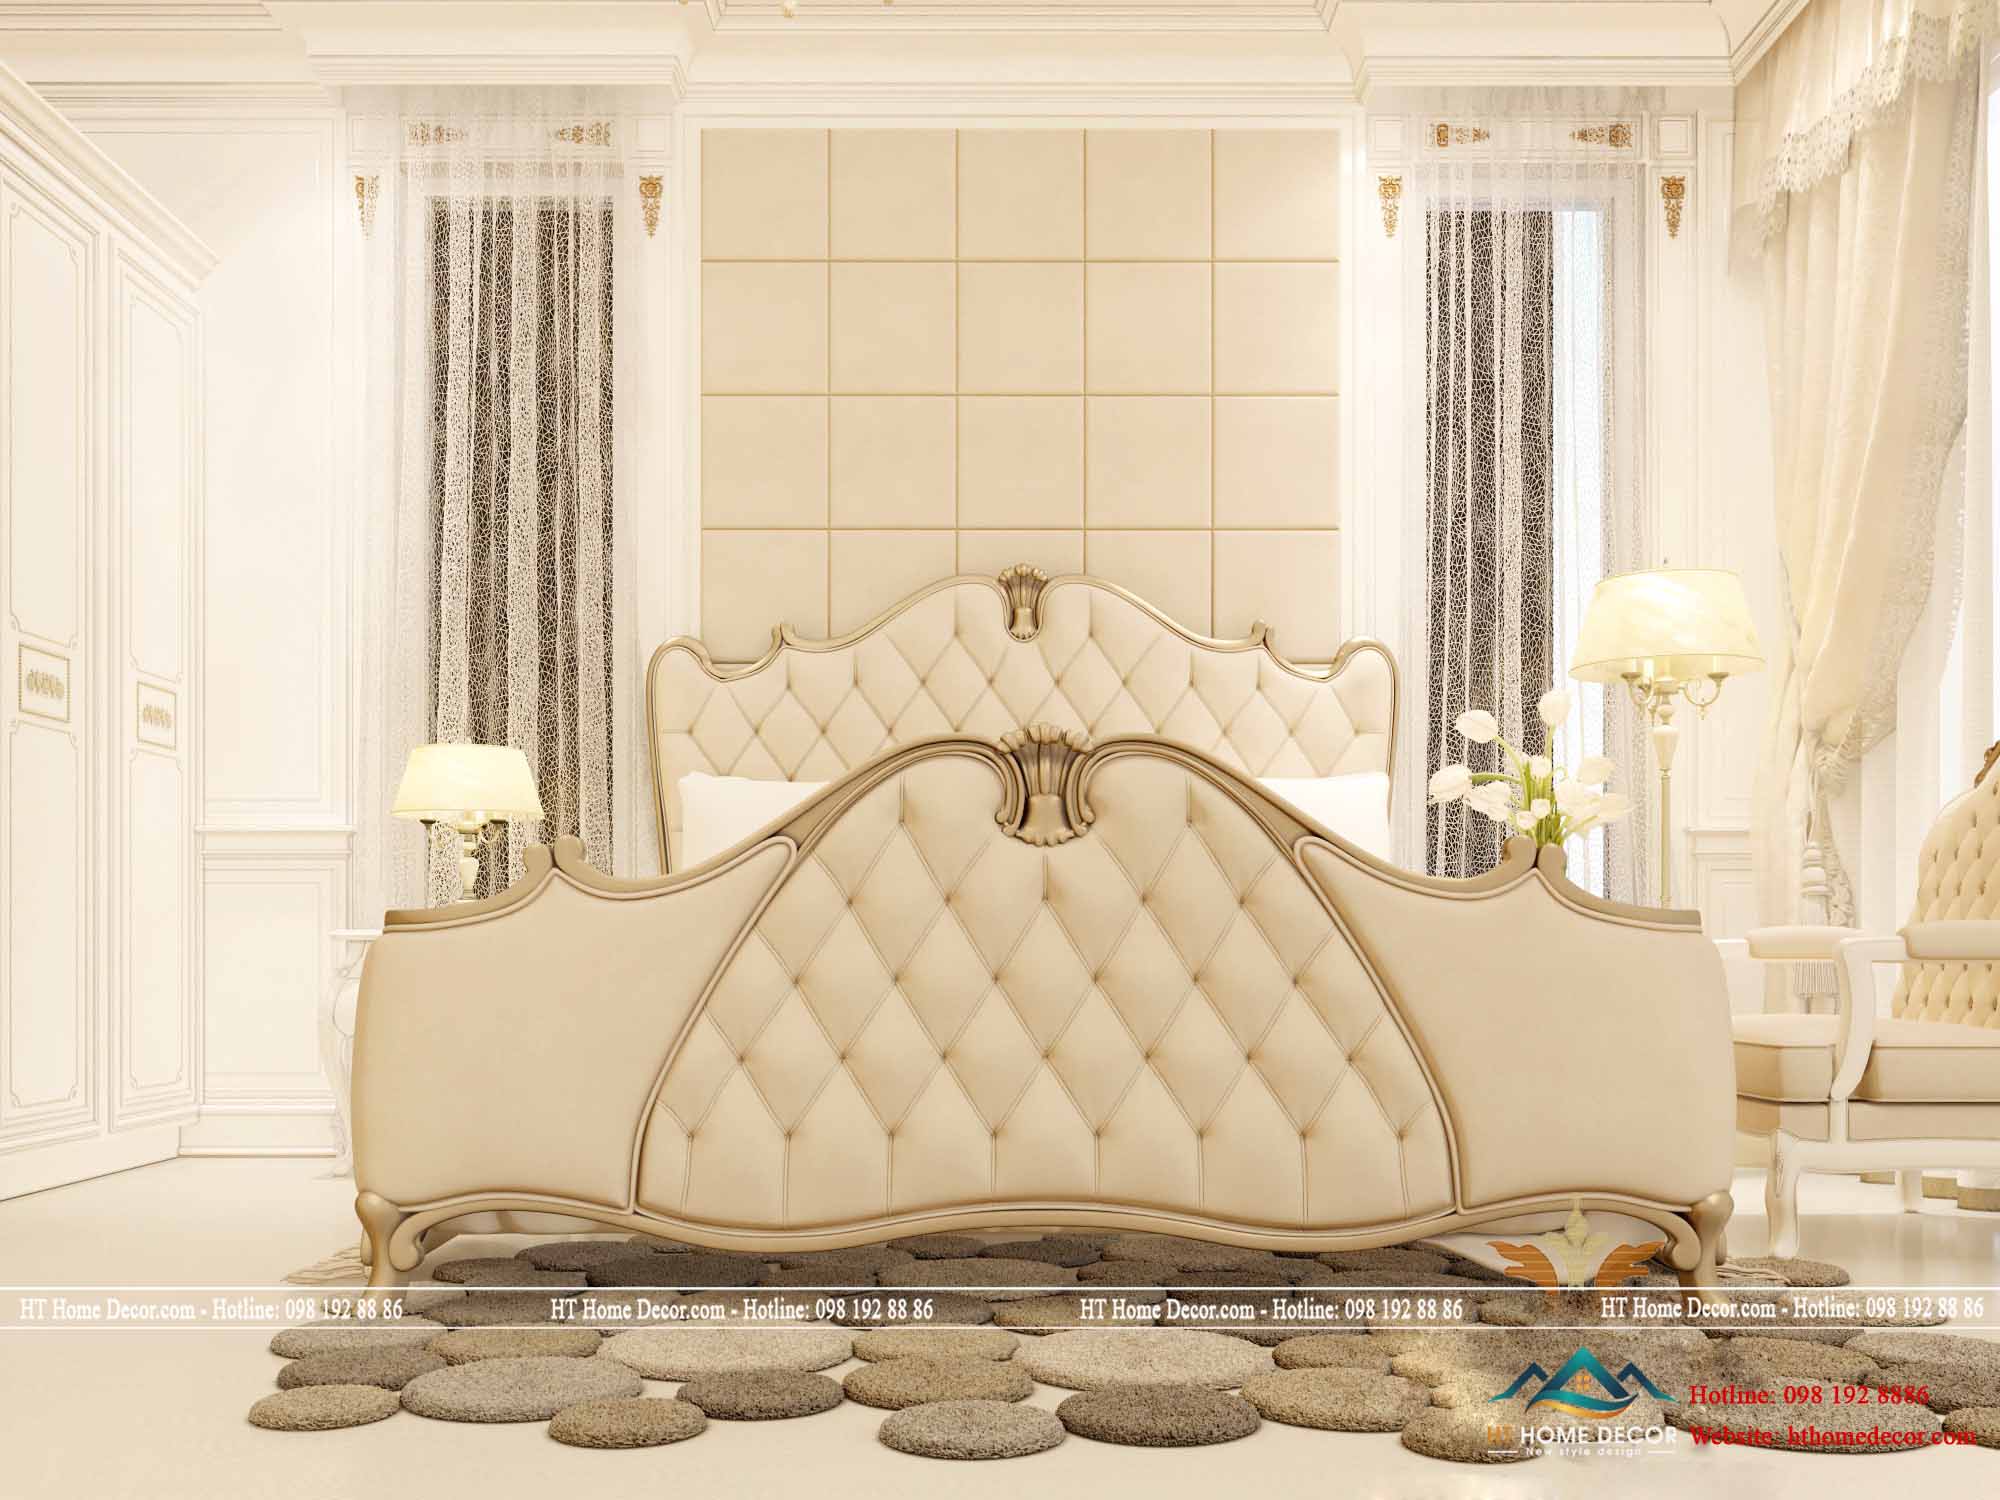 Chiếc giường nói lên được đẳng cấp của gia chủ, bởi sự thiết kế càu kì, tỉ mỉ trên từng đường nét.